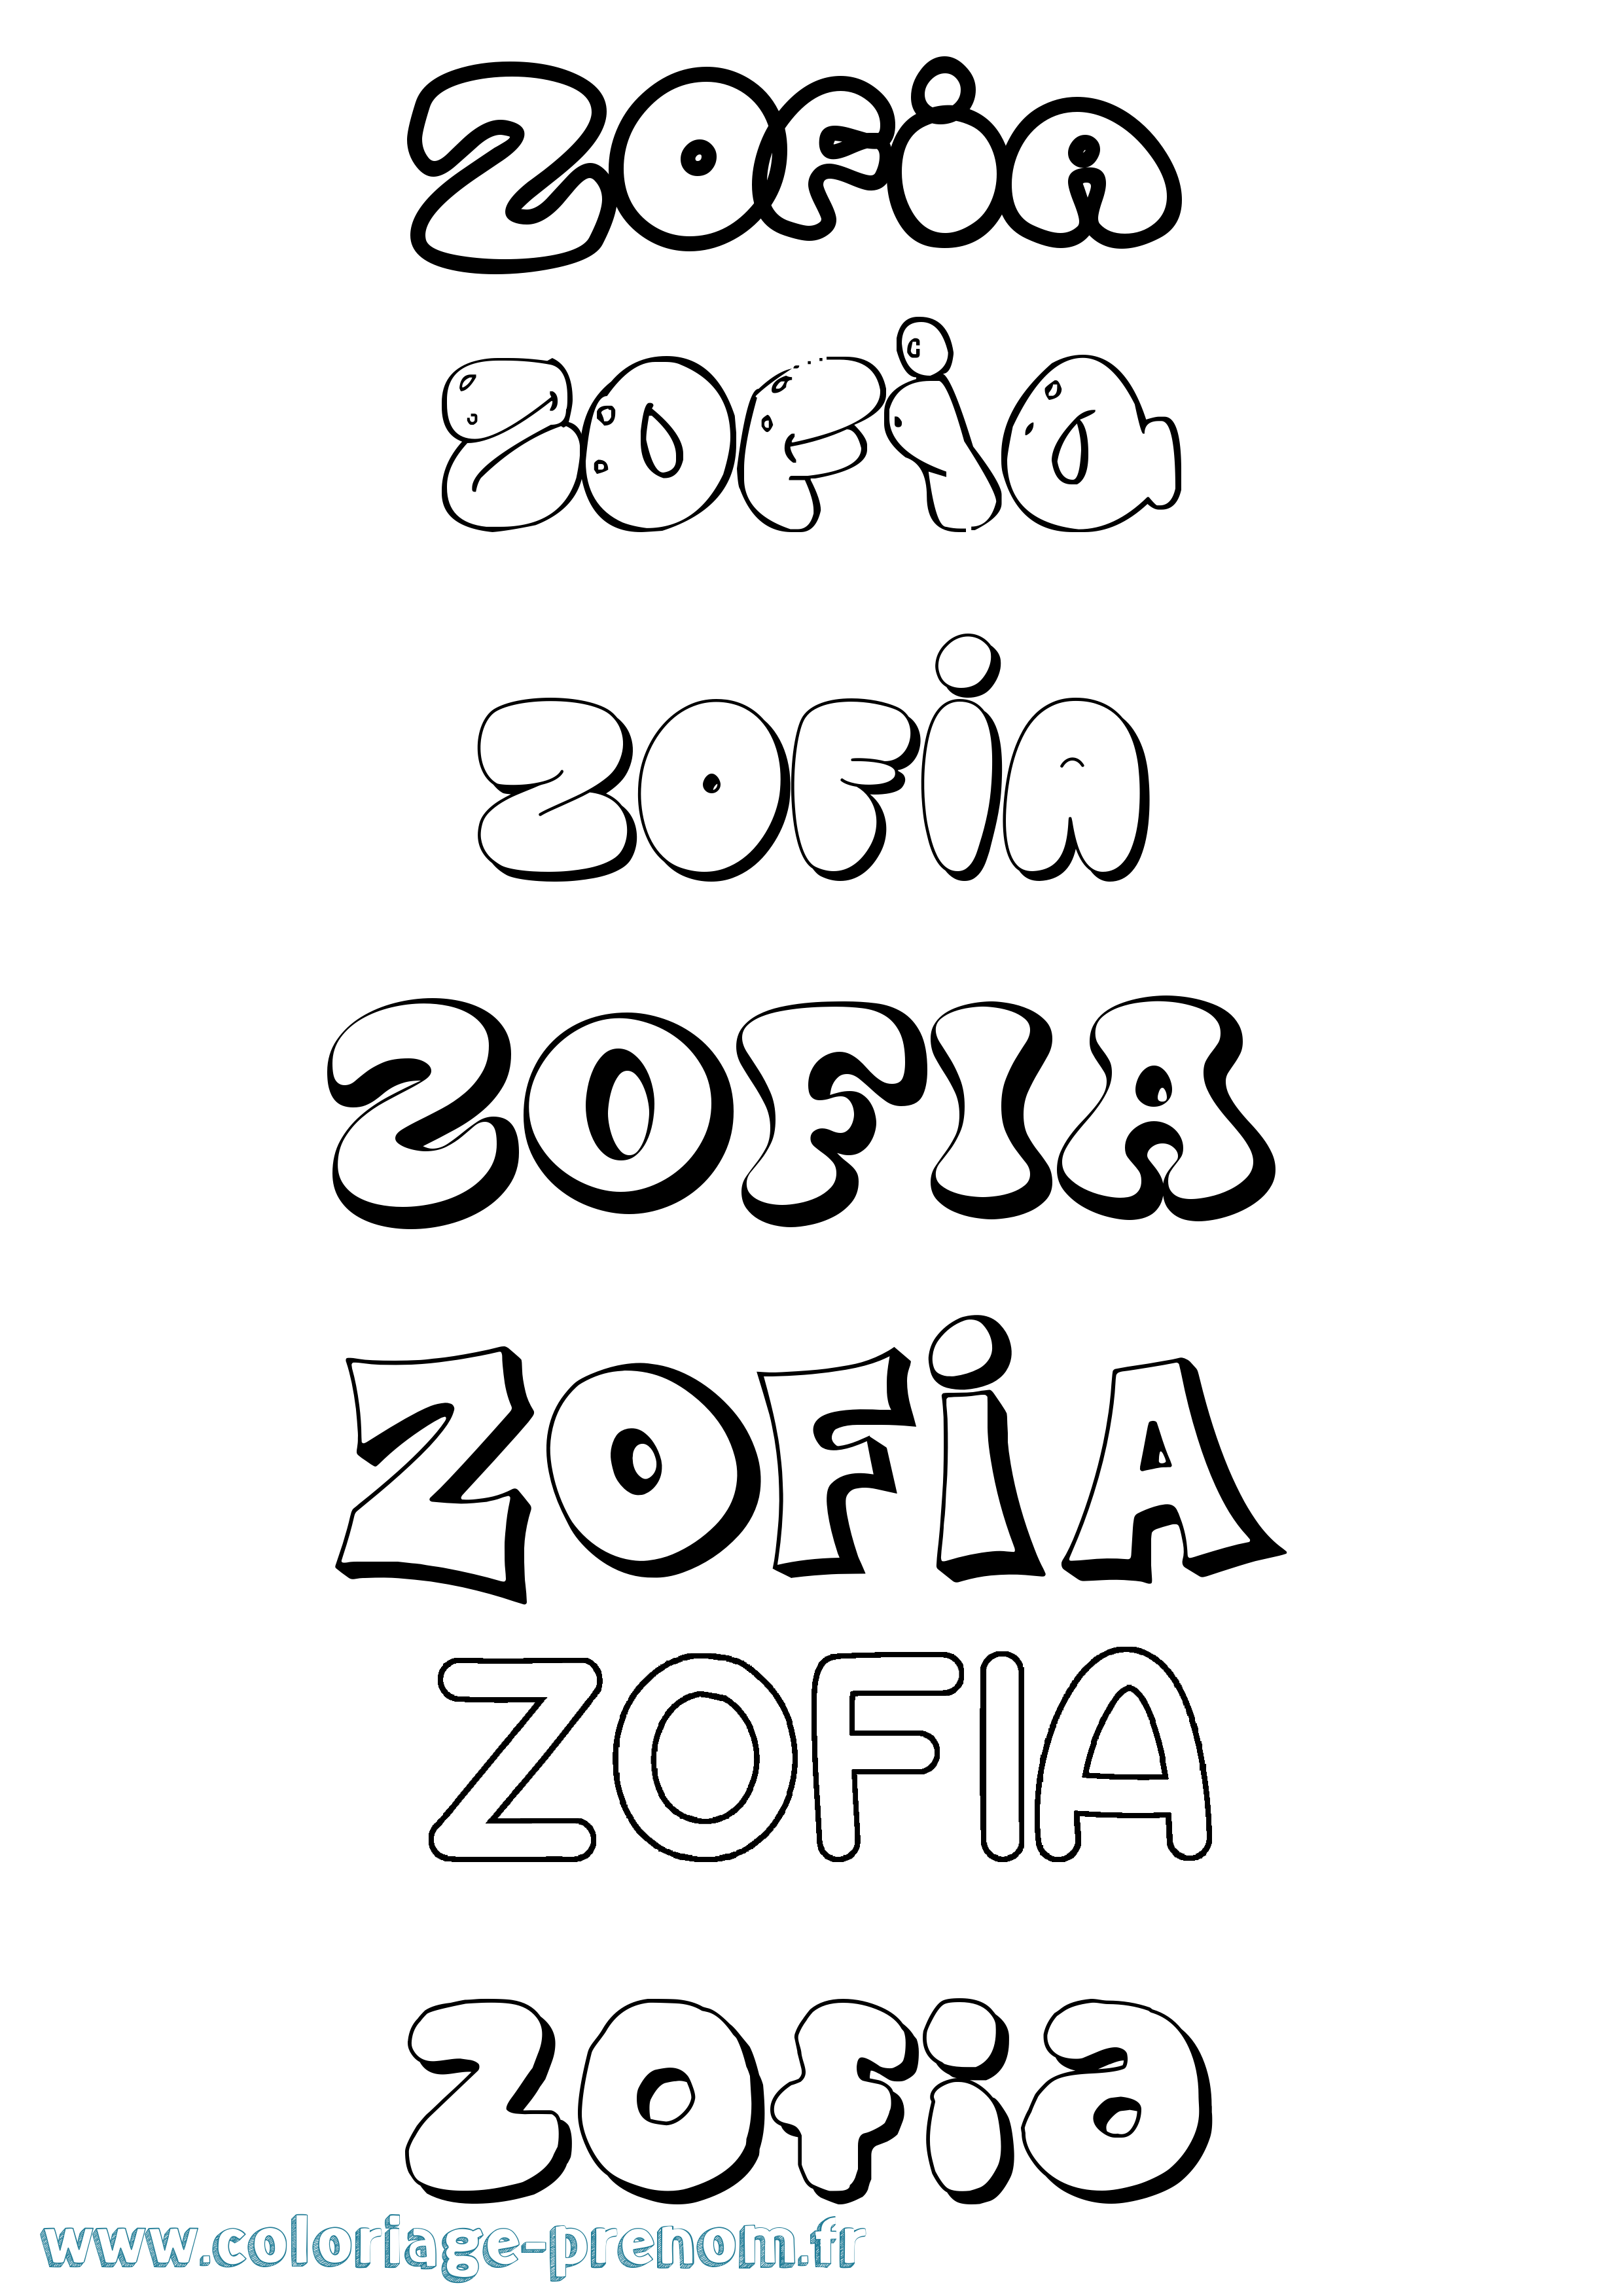 Coloriage prénom Zofia Bubble